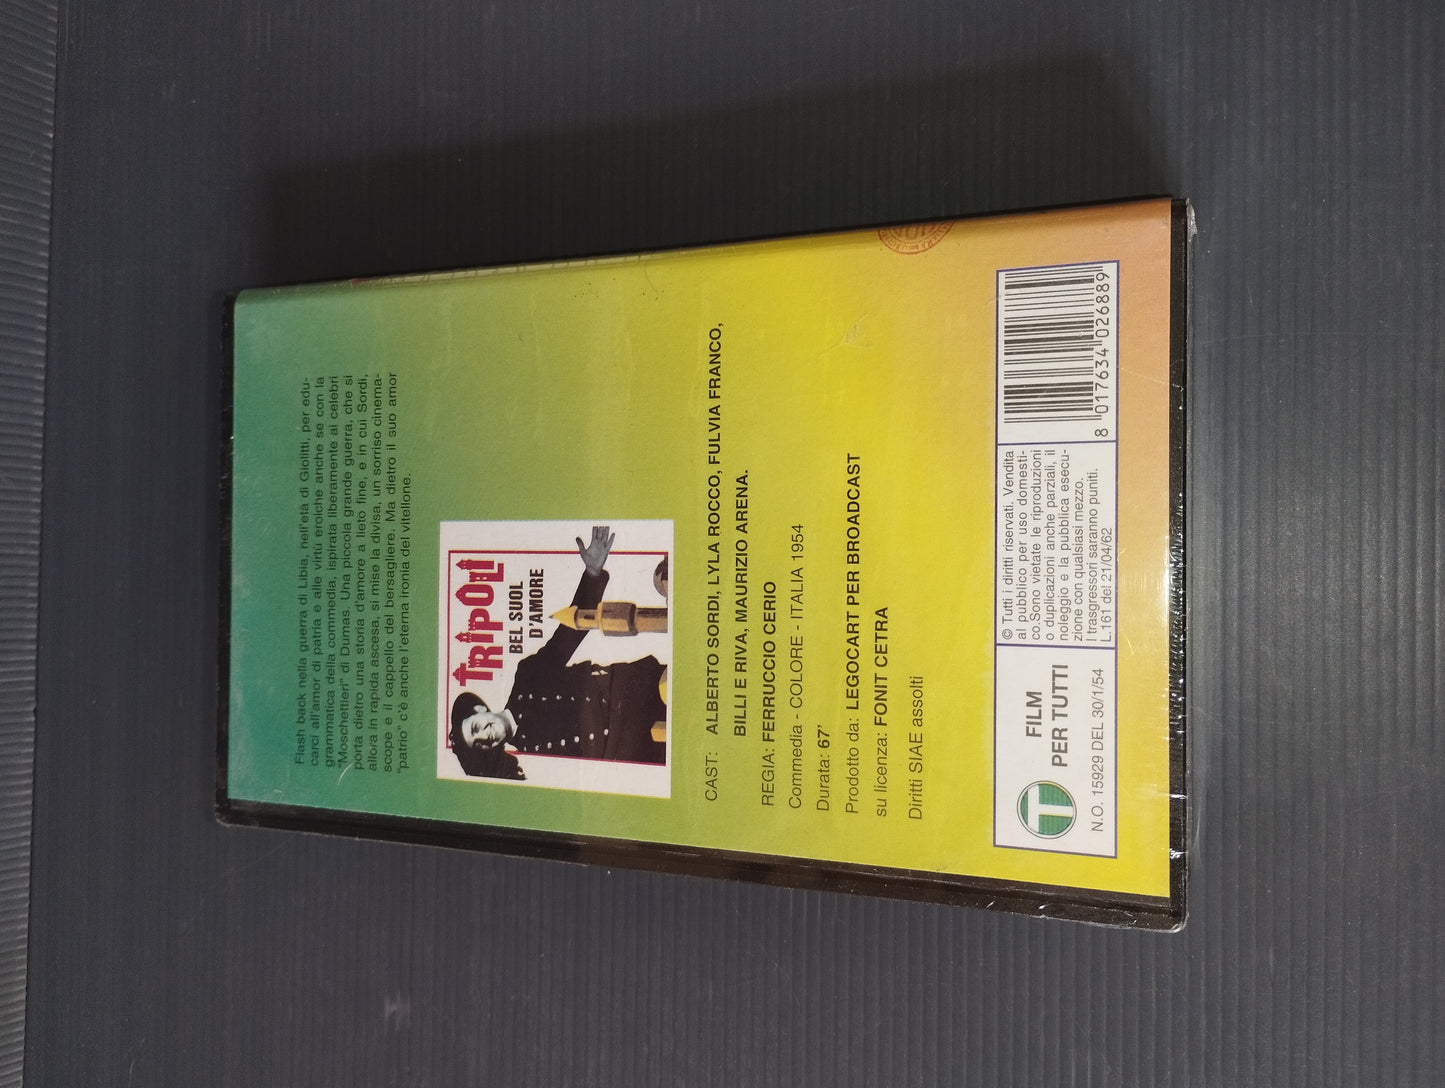 VHS "Tripoli Bel Suol D'amore "A.Sordi

Edita da Video Quick